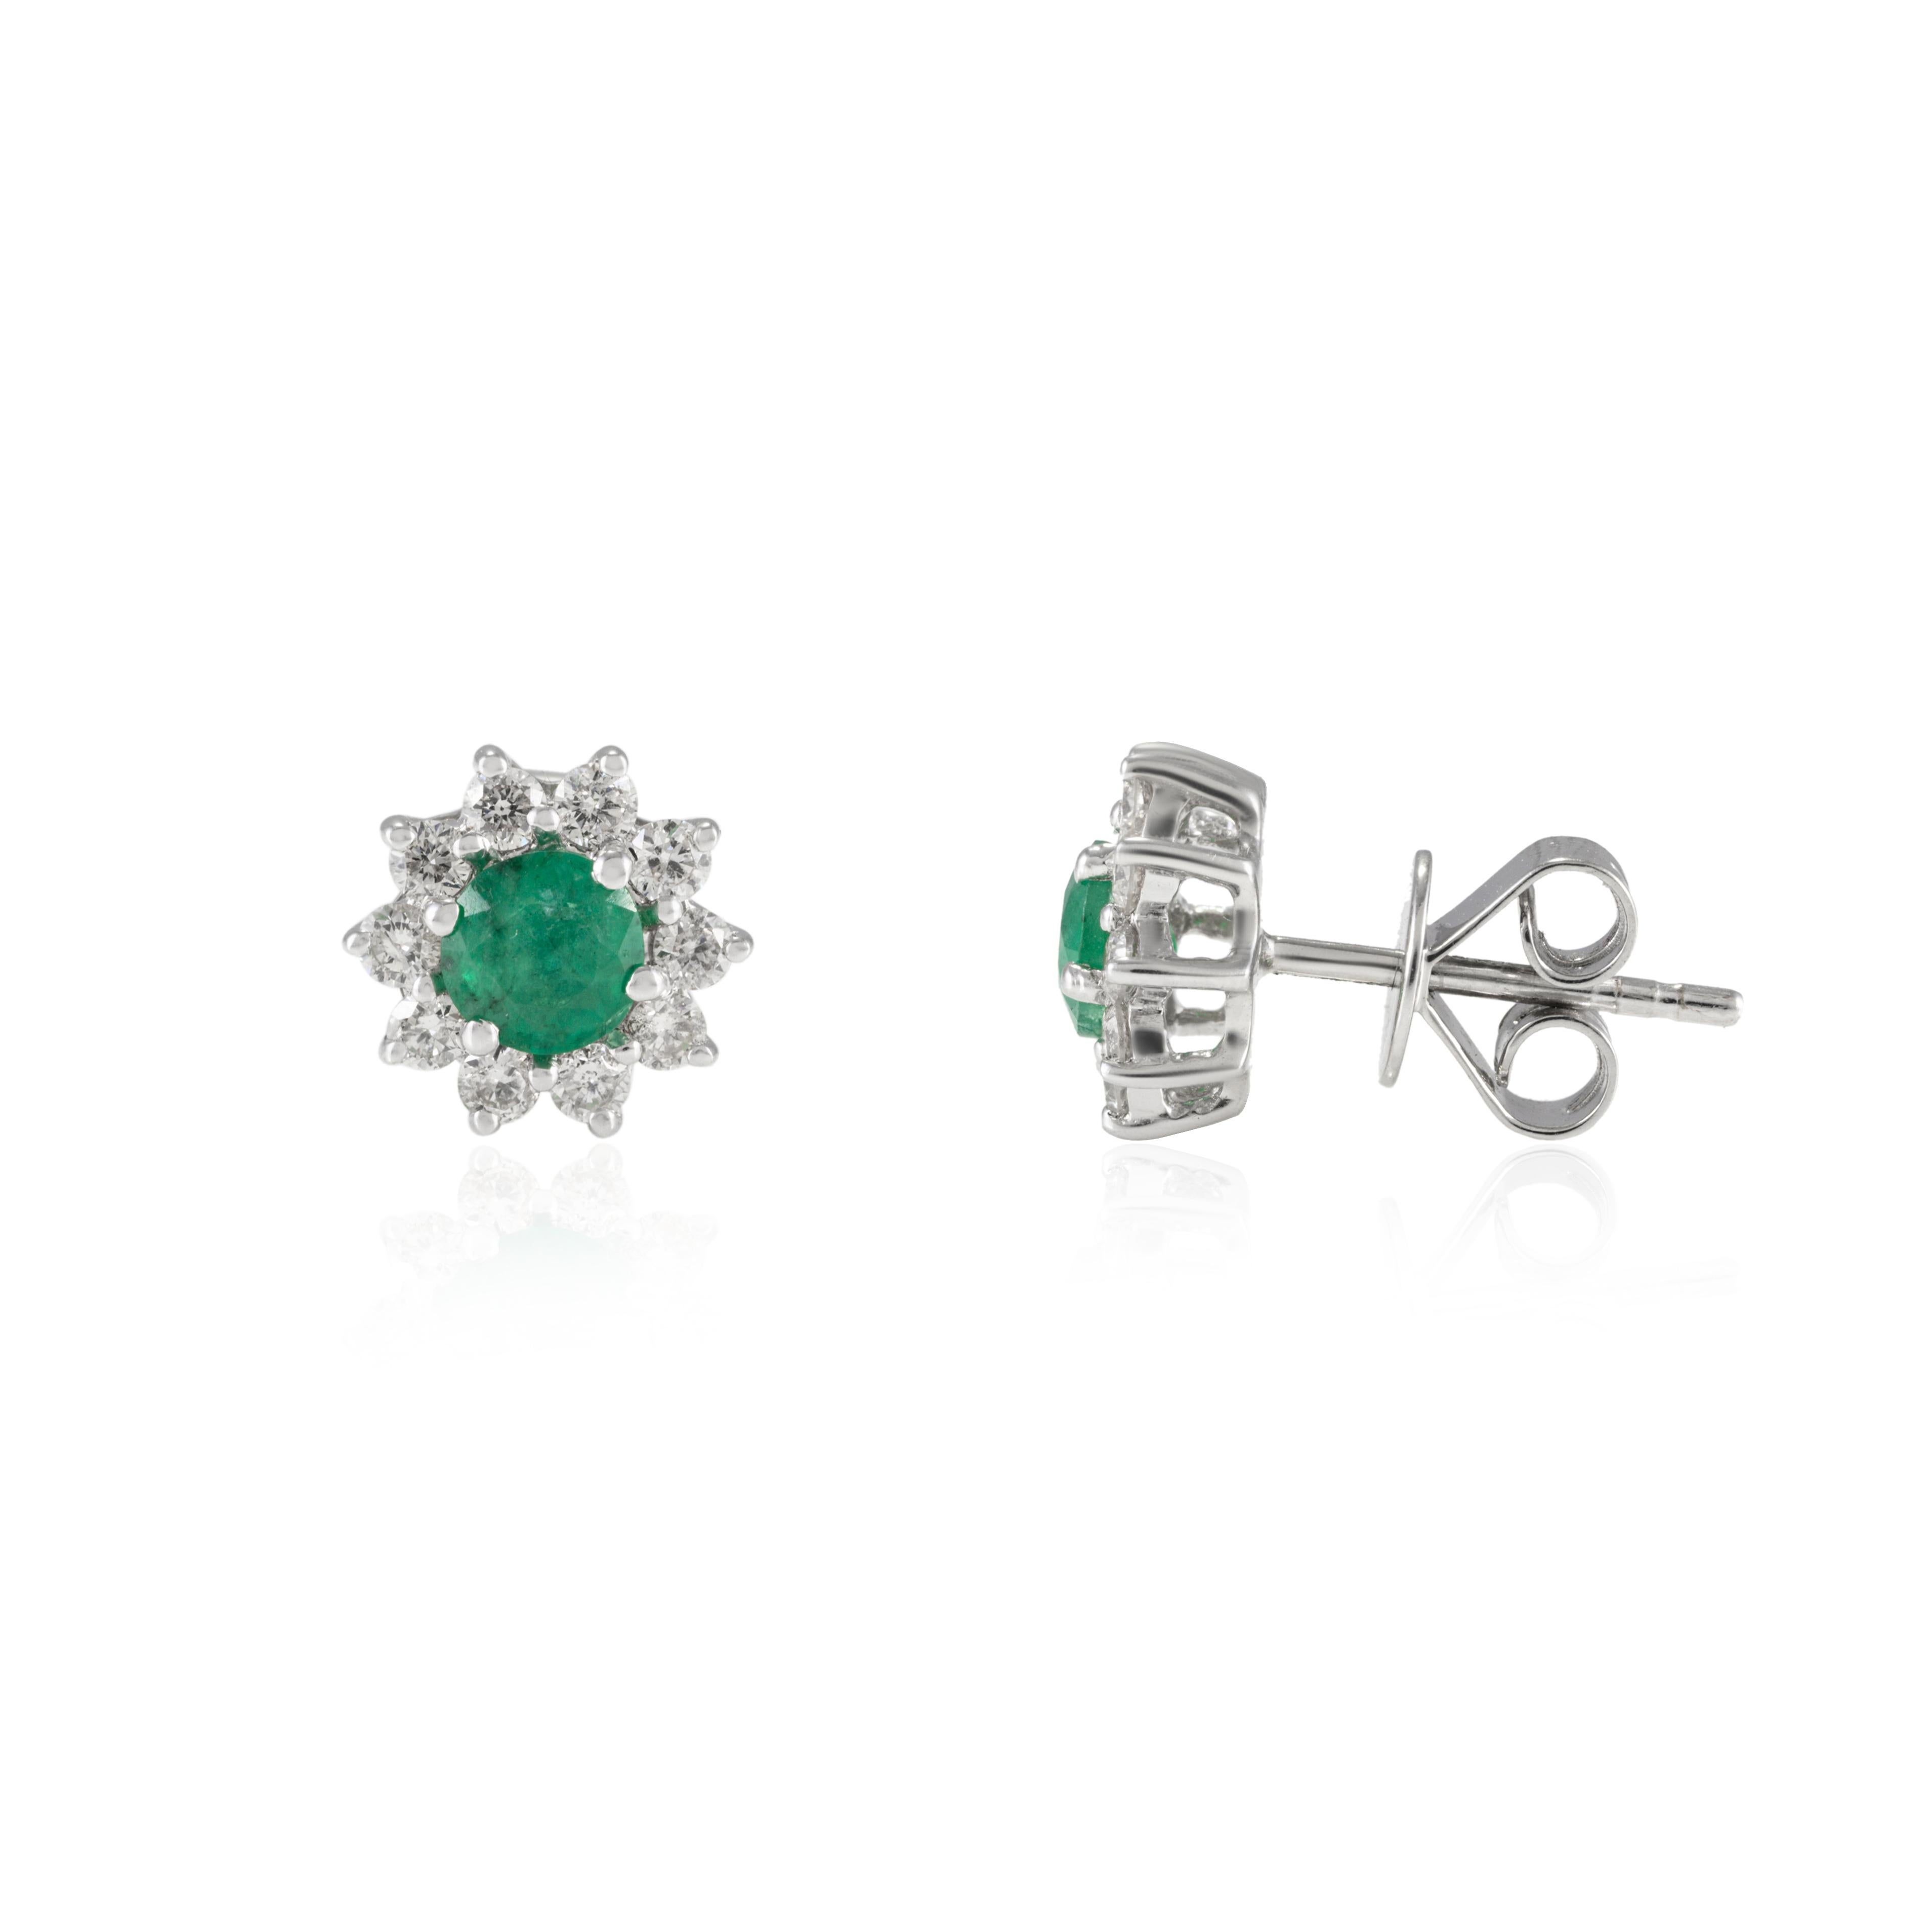 Halo-Ohrstecker mit rundem Smaragd und Diamanten aus 18 Karat Gold, um Ihren Look zu unterstreichen. Sie brauchen Ohrstecker, um mit Ihrem Look ein Statement zu setzen. Diese Ohrringe mit rundgeschliffenem Smaragd sorgen für einen funkelnden,